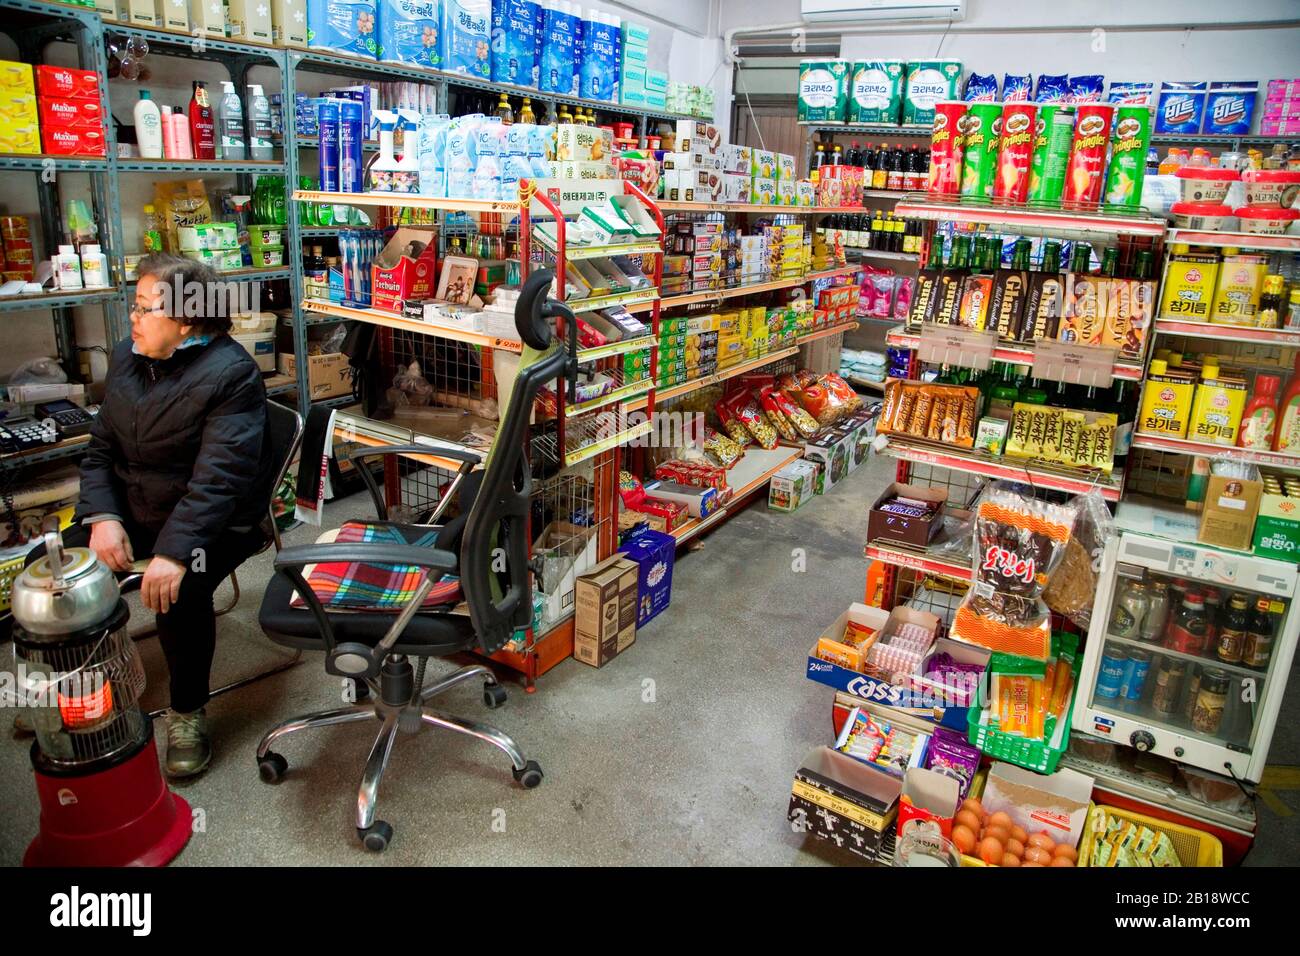 El Supermercado Dwejissal, 17 De Febrero De 2020 : El Supermercado Dwejissal, Apodado Woori Supermarket En La Película Coreana 'Parasite' En Seúl, Corea Del Sur. El supermercado es una ubicación icónica de la película ganadora de un Oscar "Parasite" dirigida por Bong Joon-Ho. Crédito: Lee Jae-Won/Aflo/Alamy Live News Foto de stock